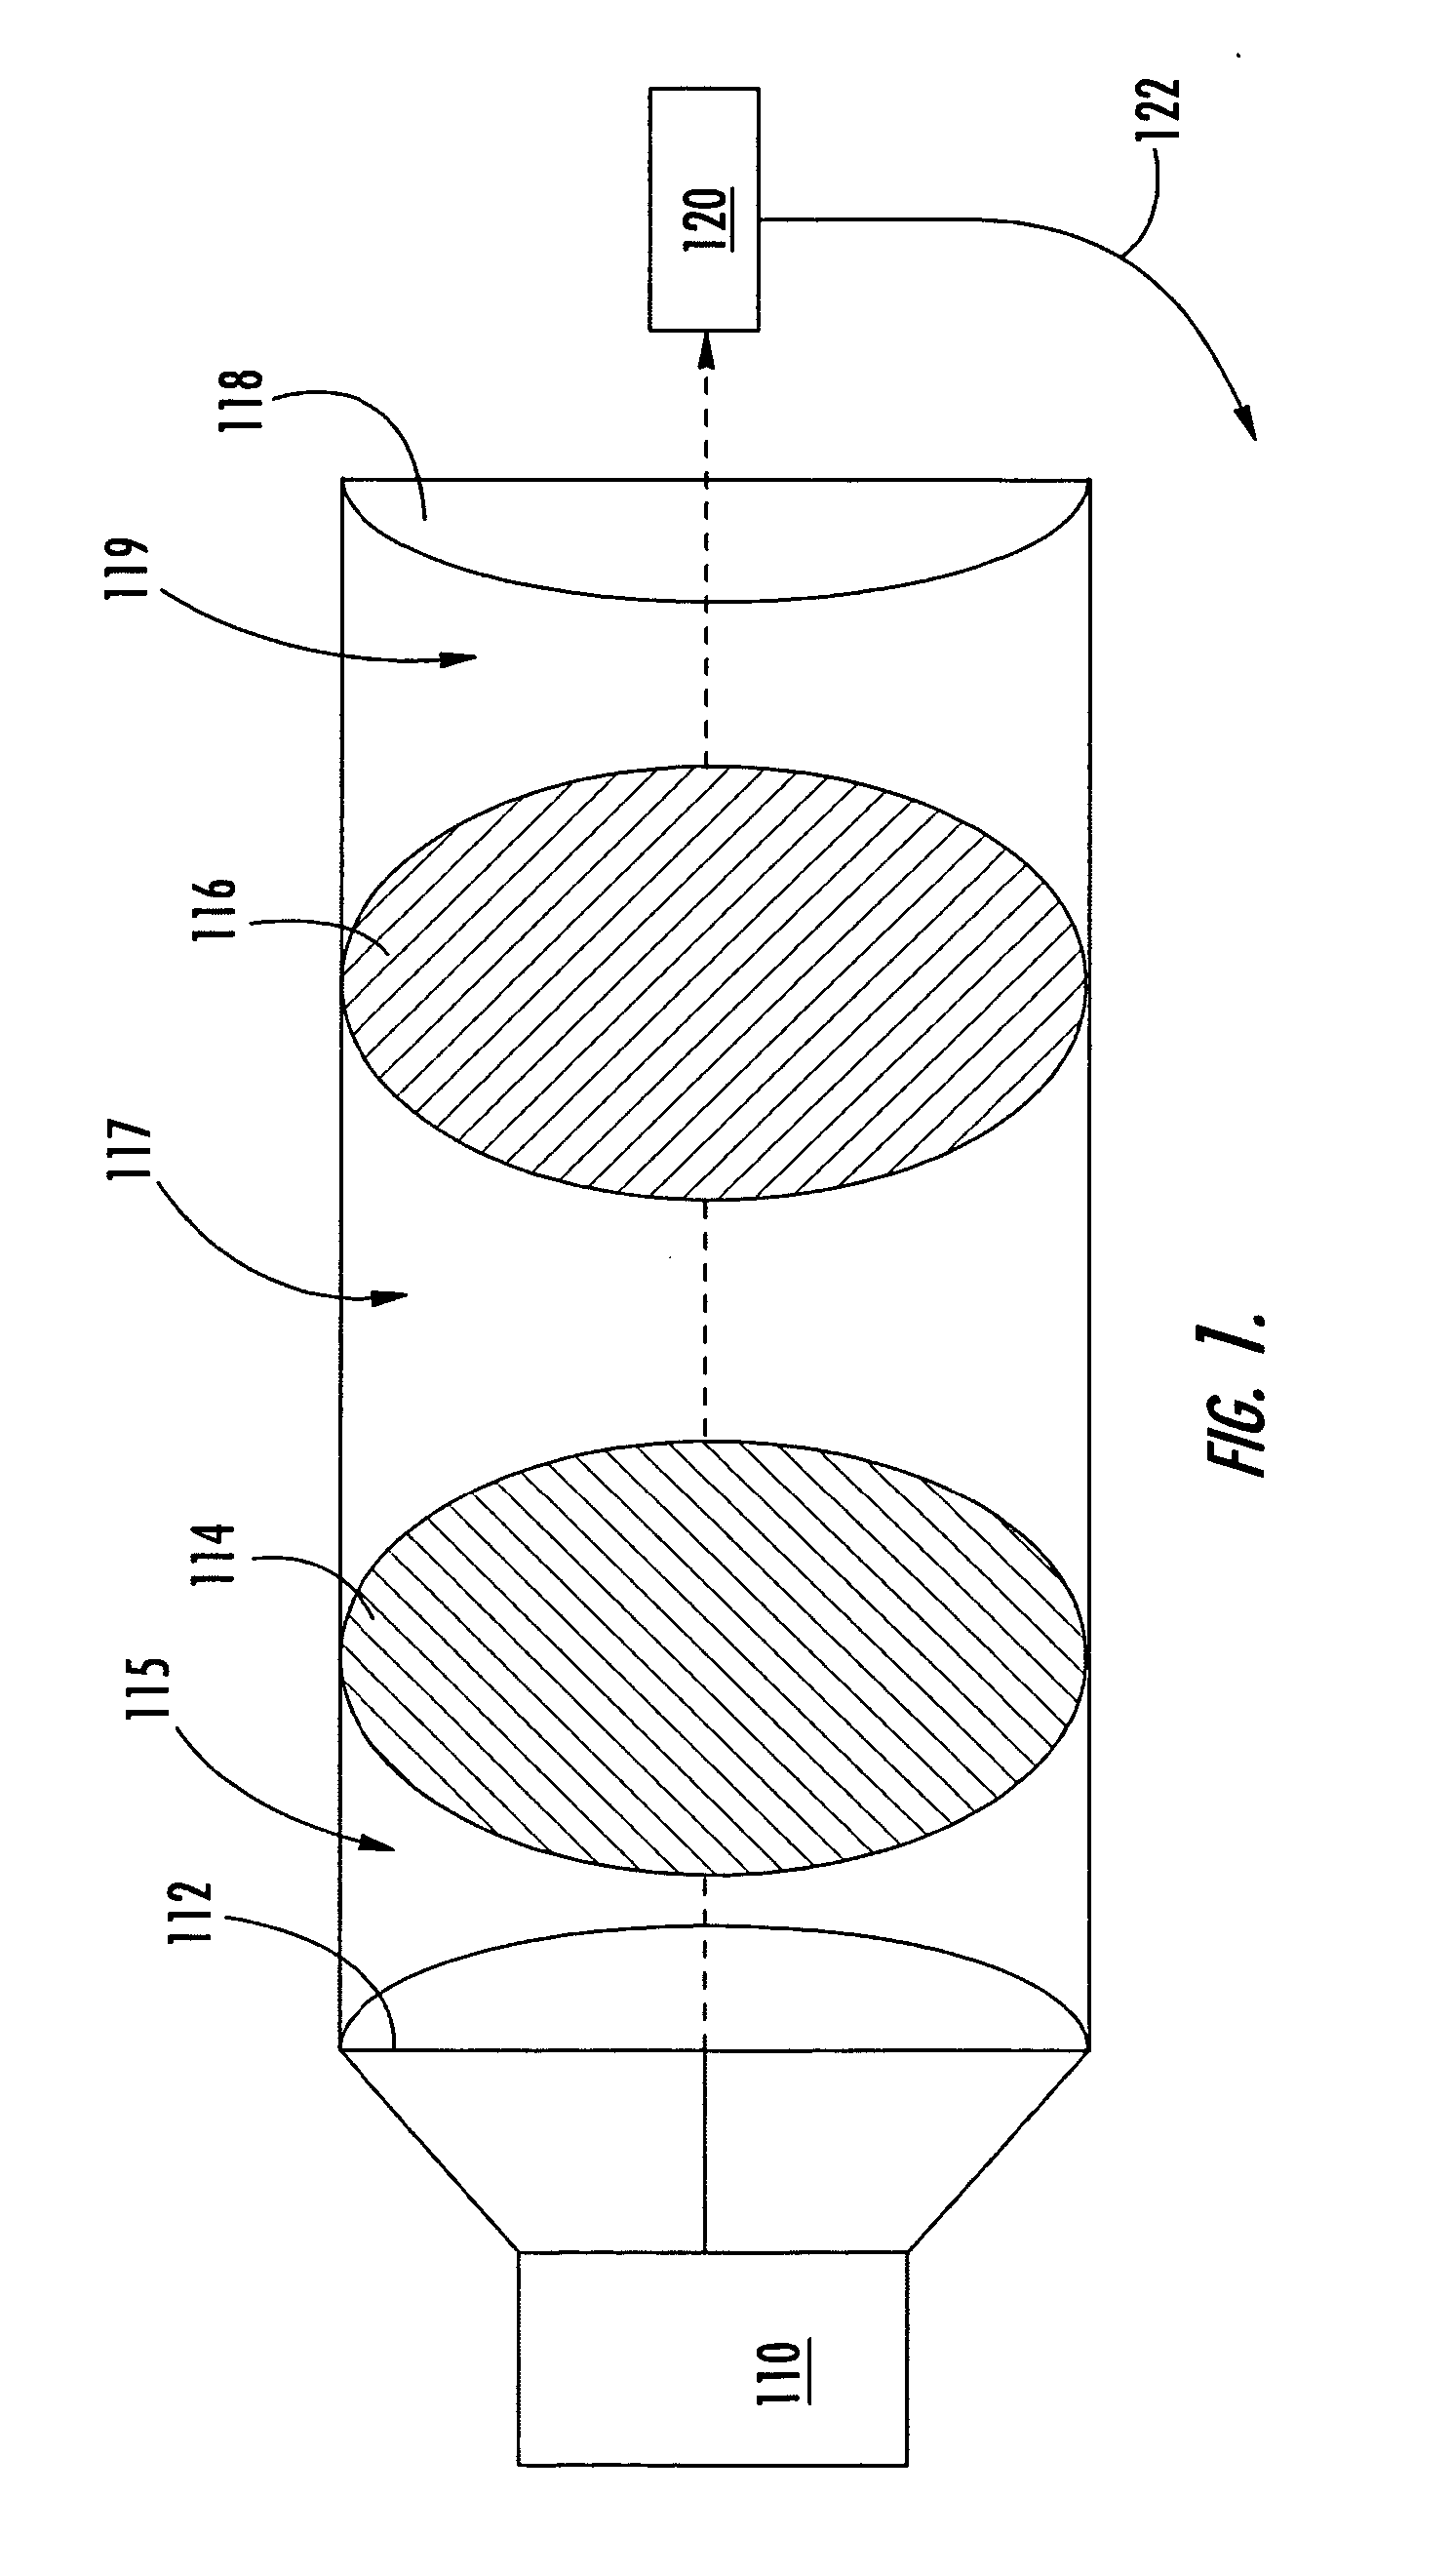 Non-contact optical polarization angle encoder